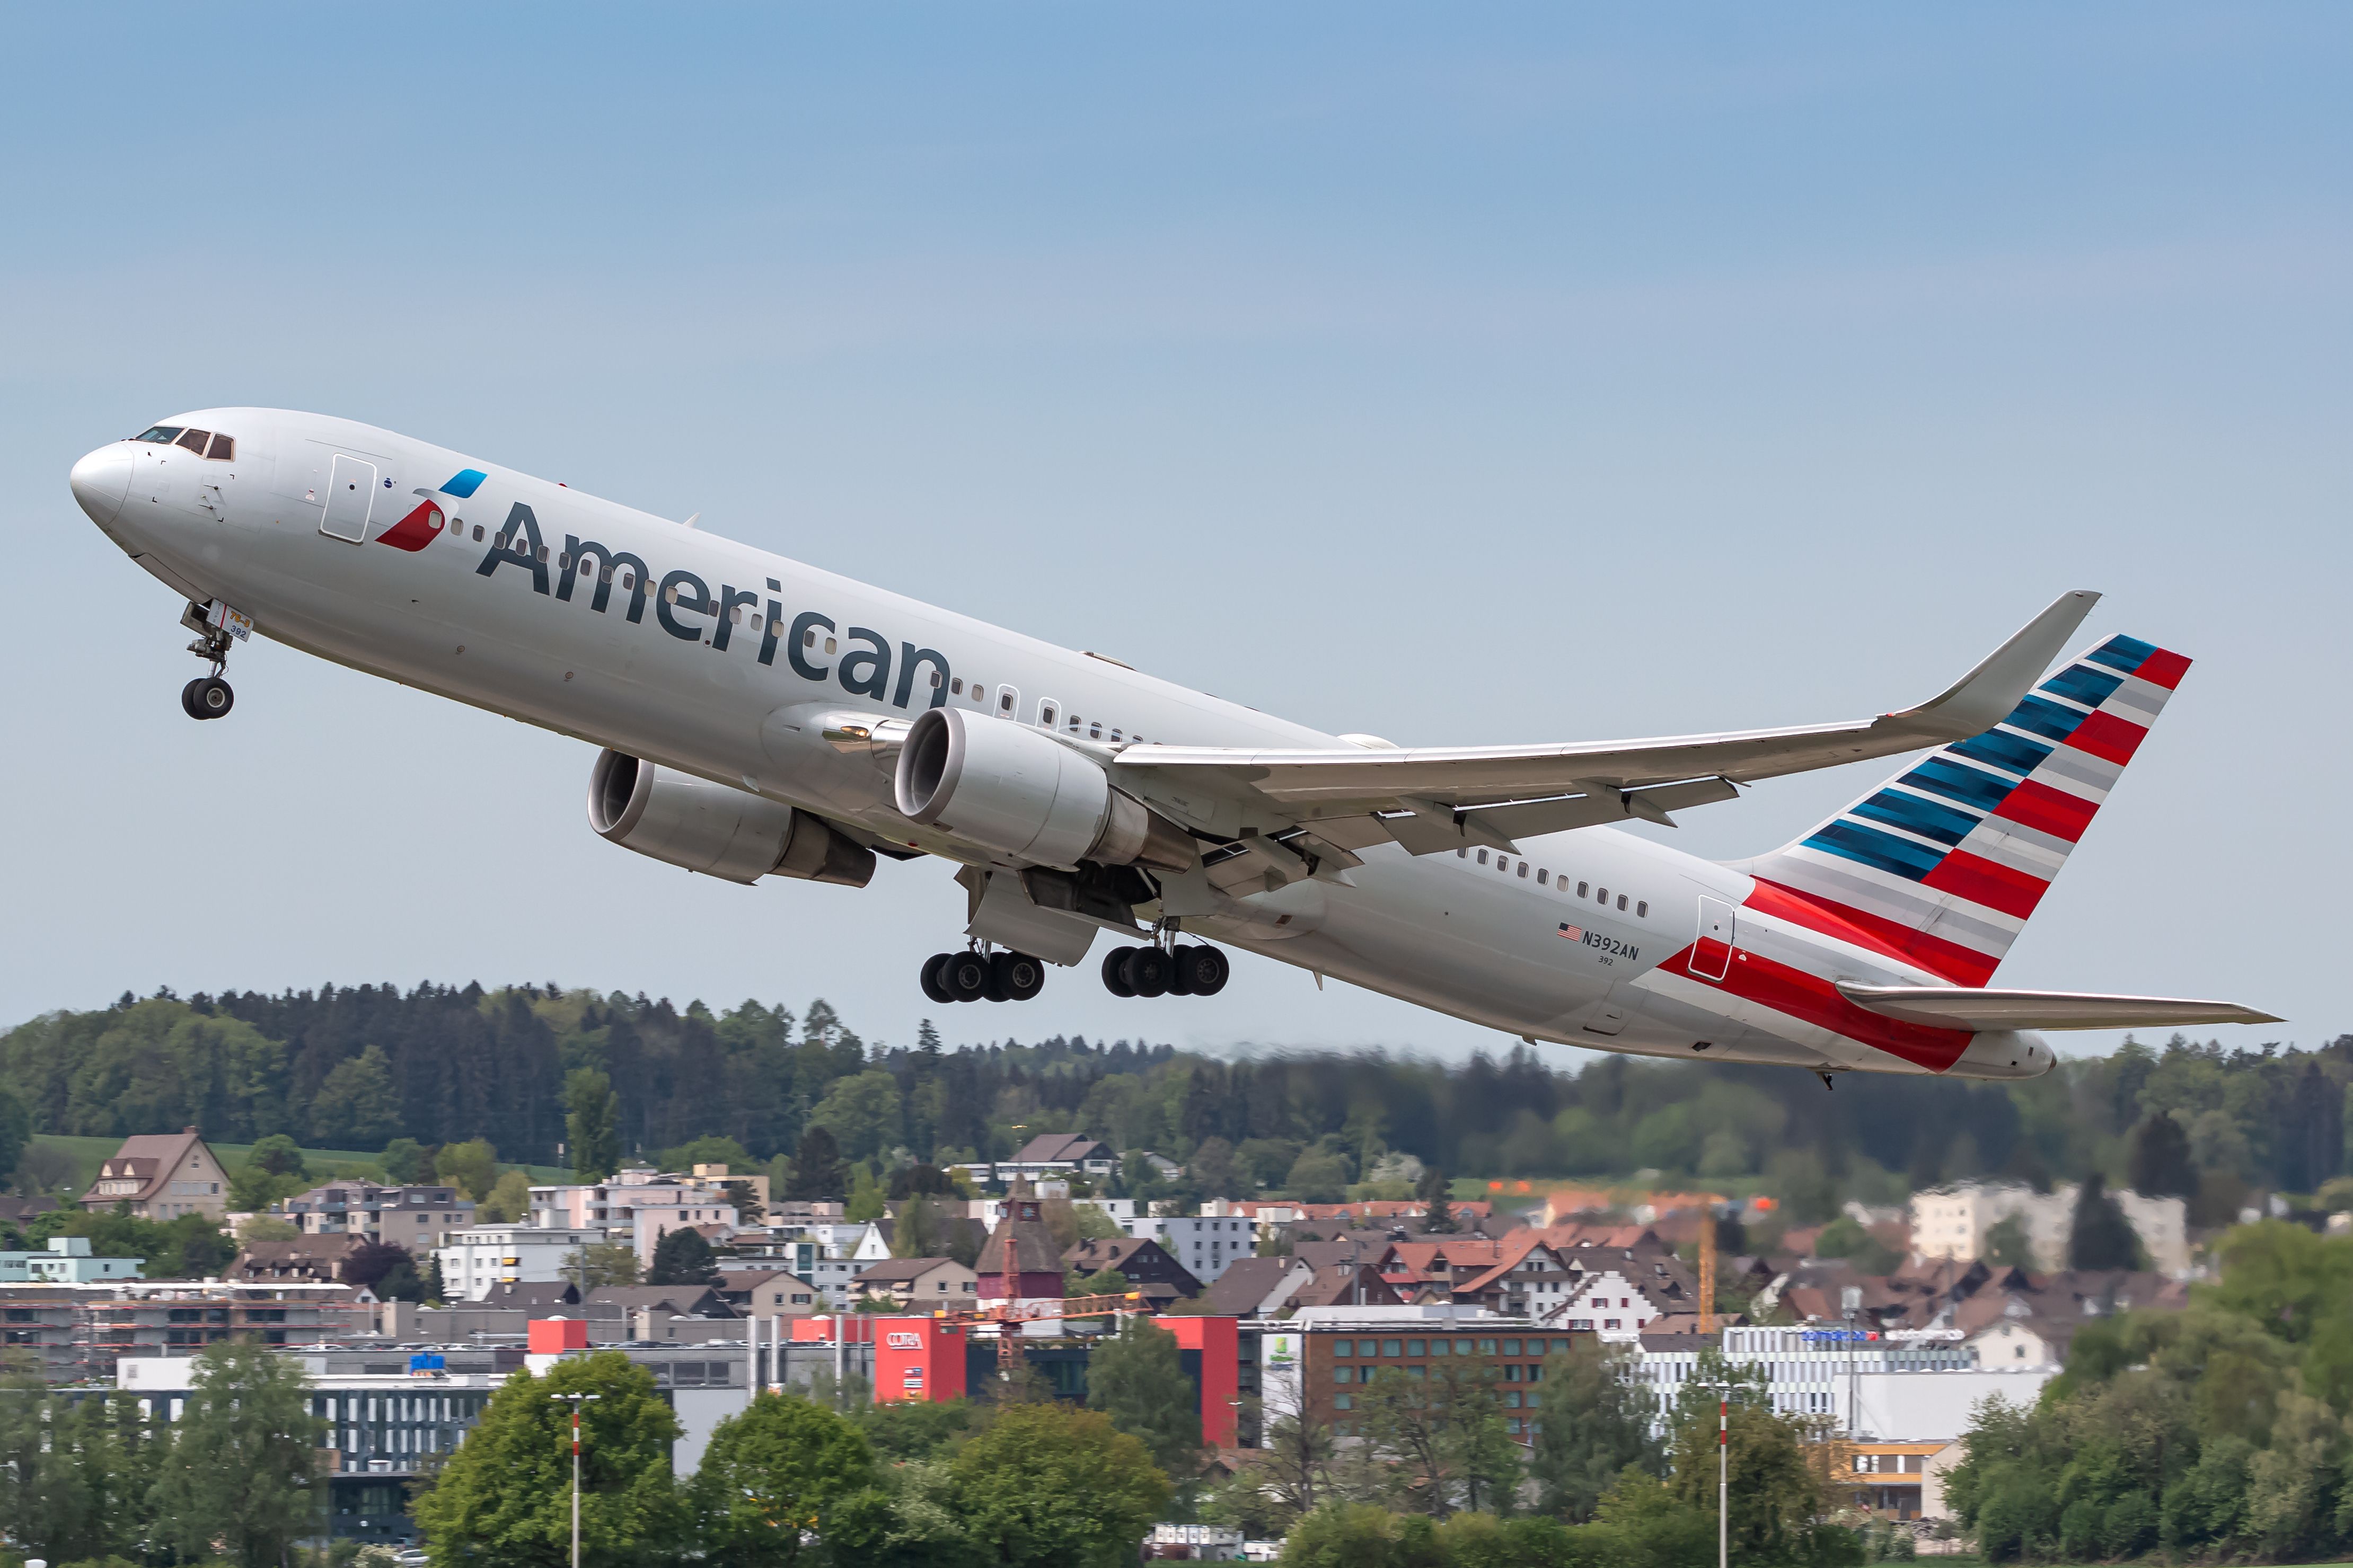 American Airlines Boeing 767 airplane at Zurich airport ZRH in Switzerland.